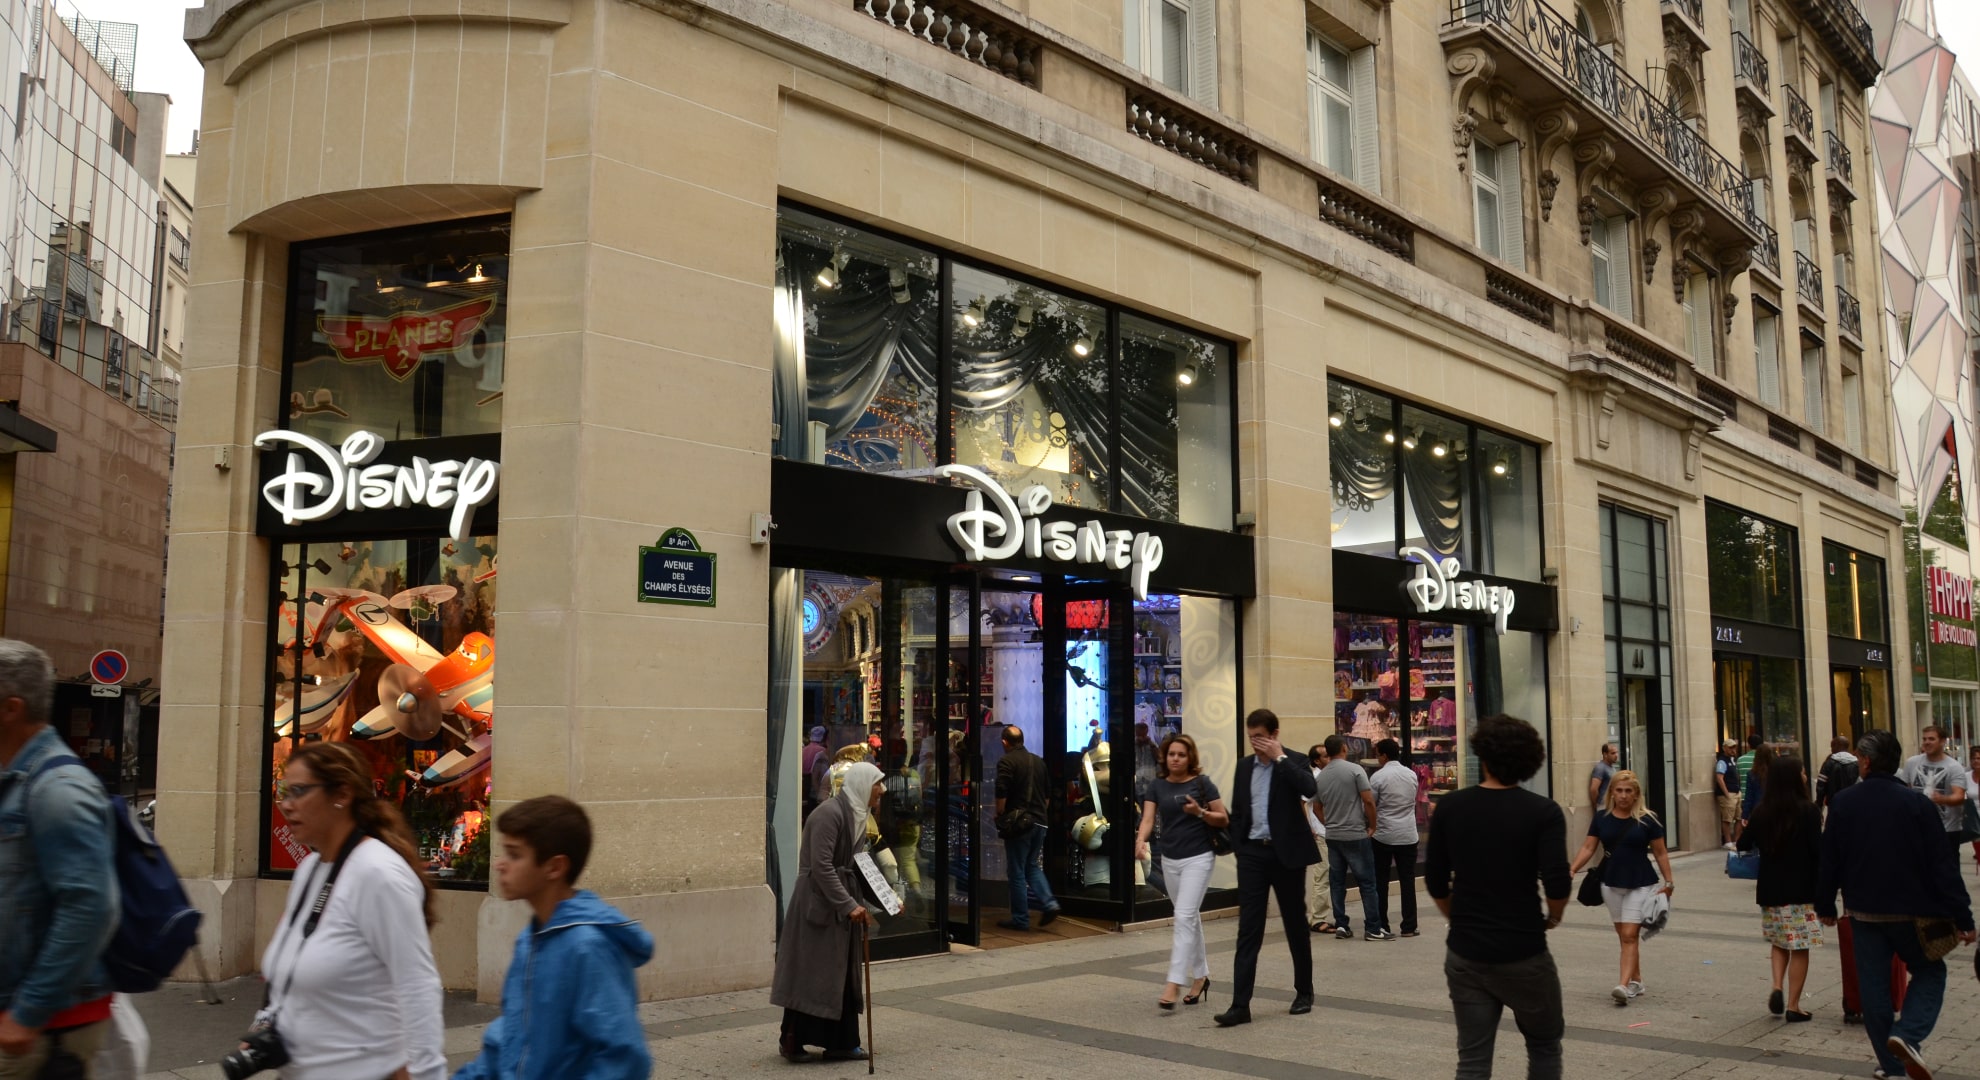 Le Disney store des Champs-Élysées en 2014. - Steven Lek